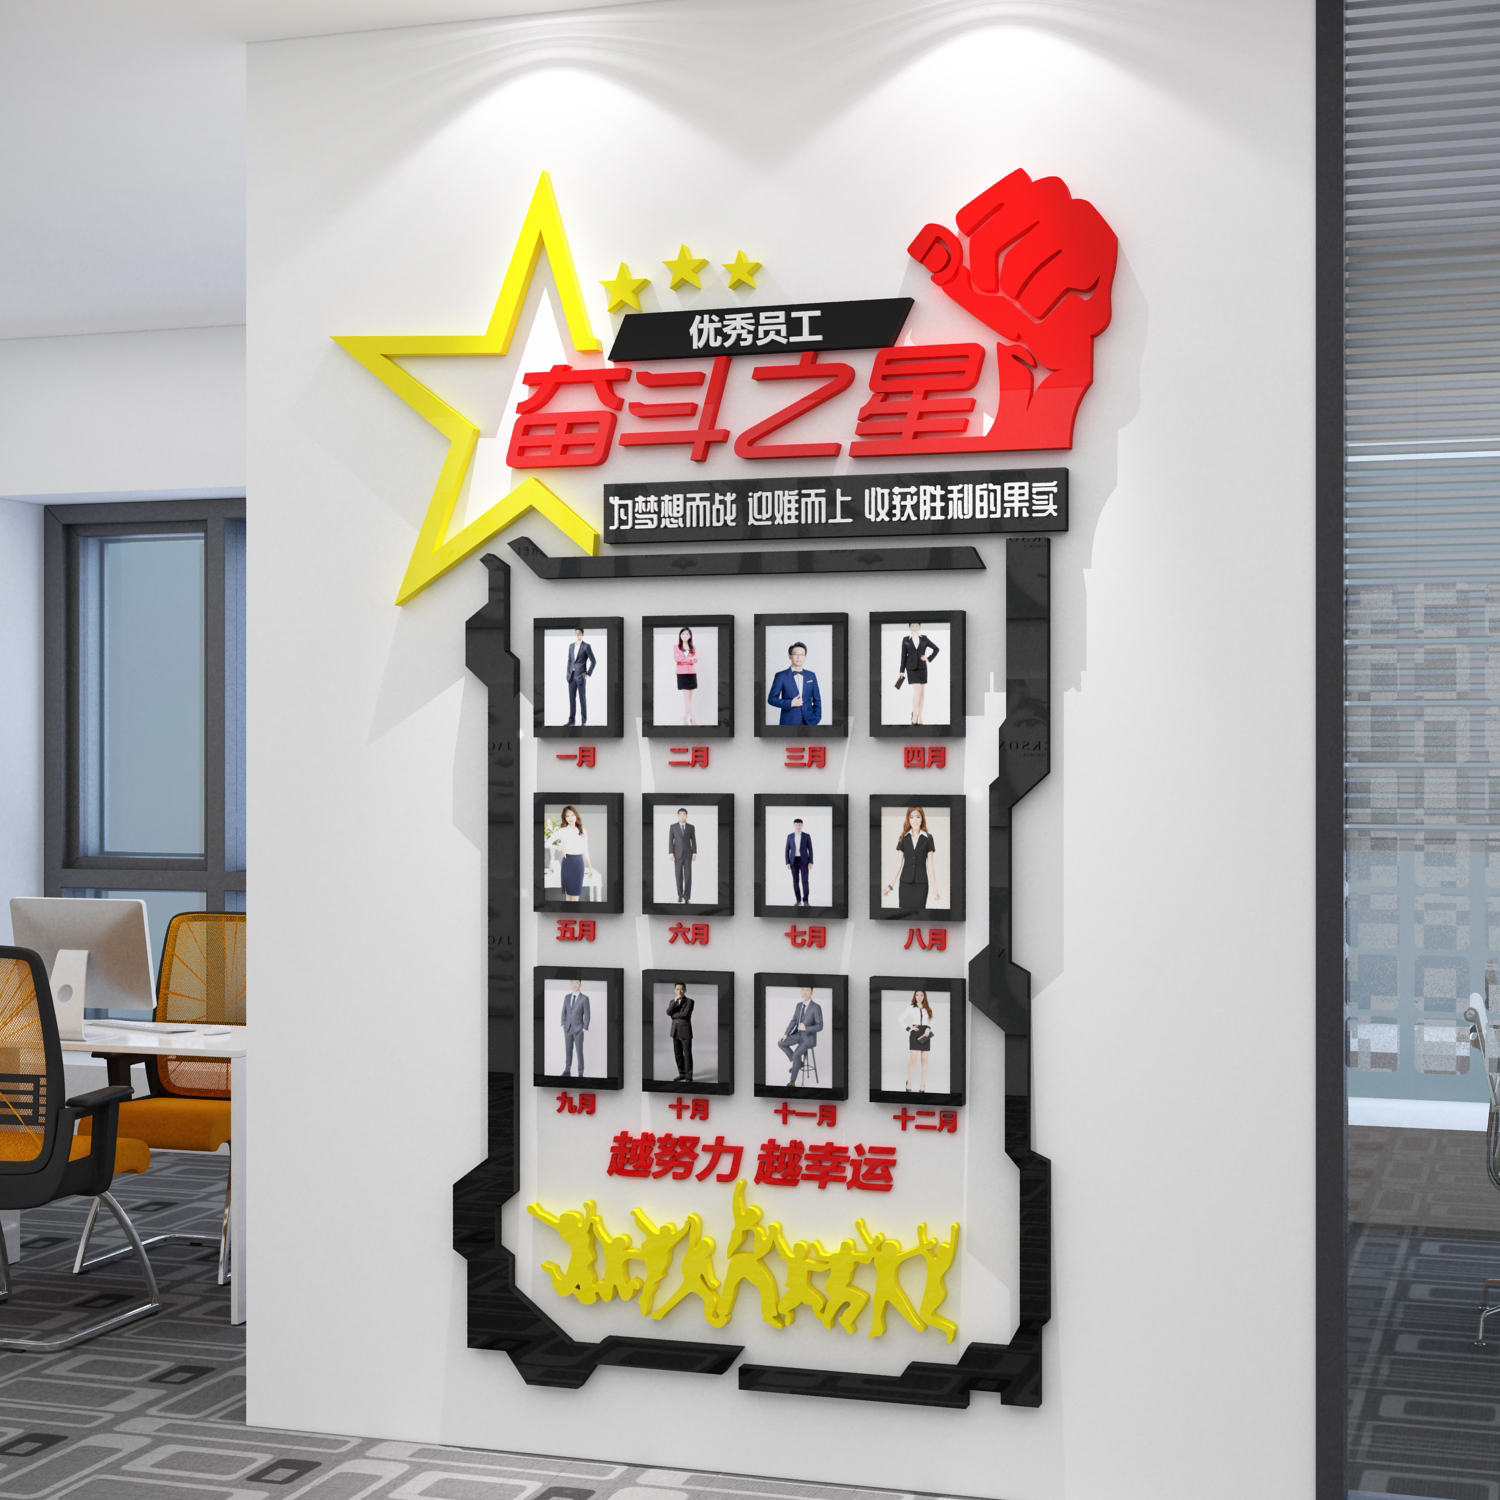 企业文化照片墙贴优秀员工风采荣誉展示办公室装饰销冠公司英雄榜